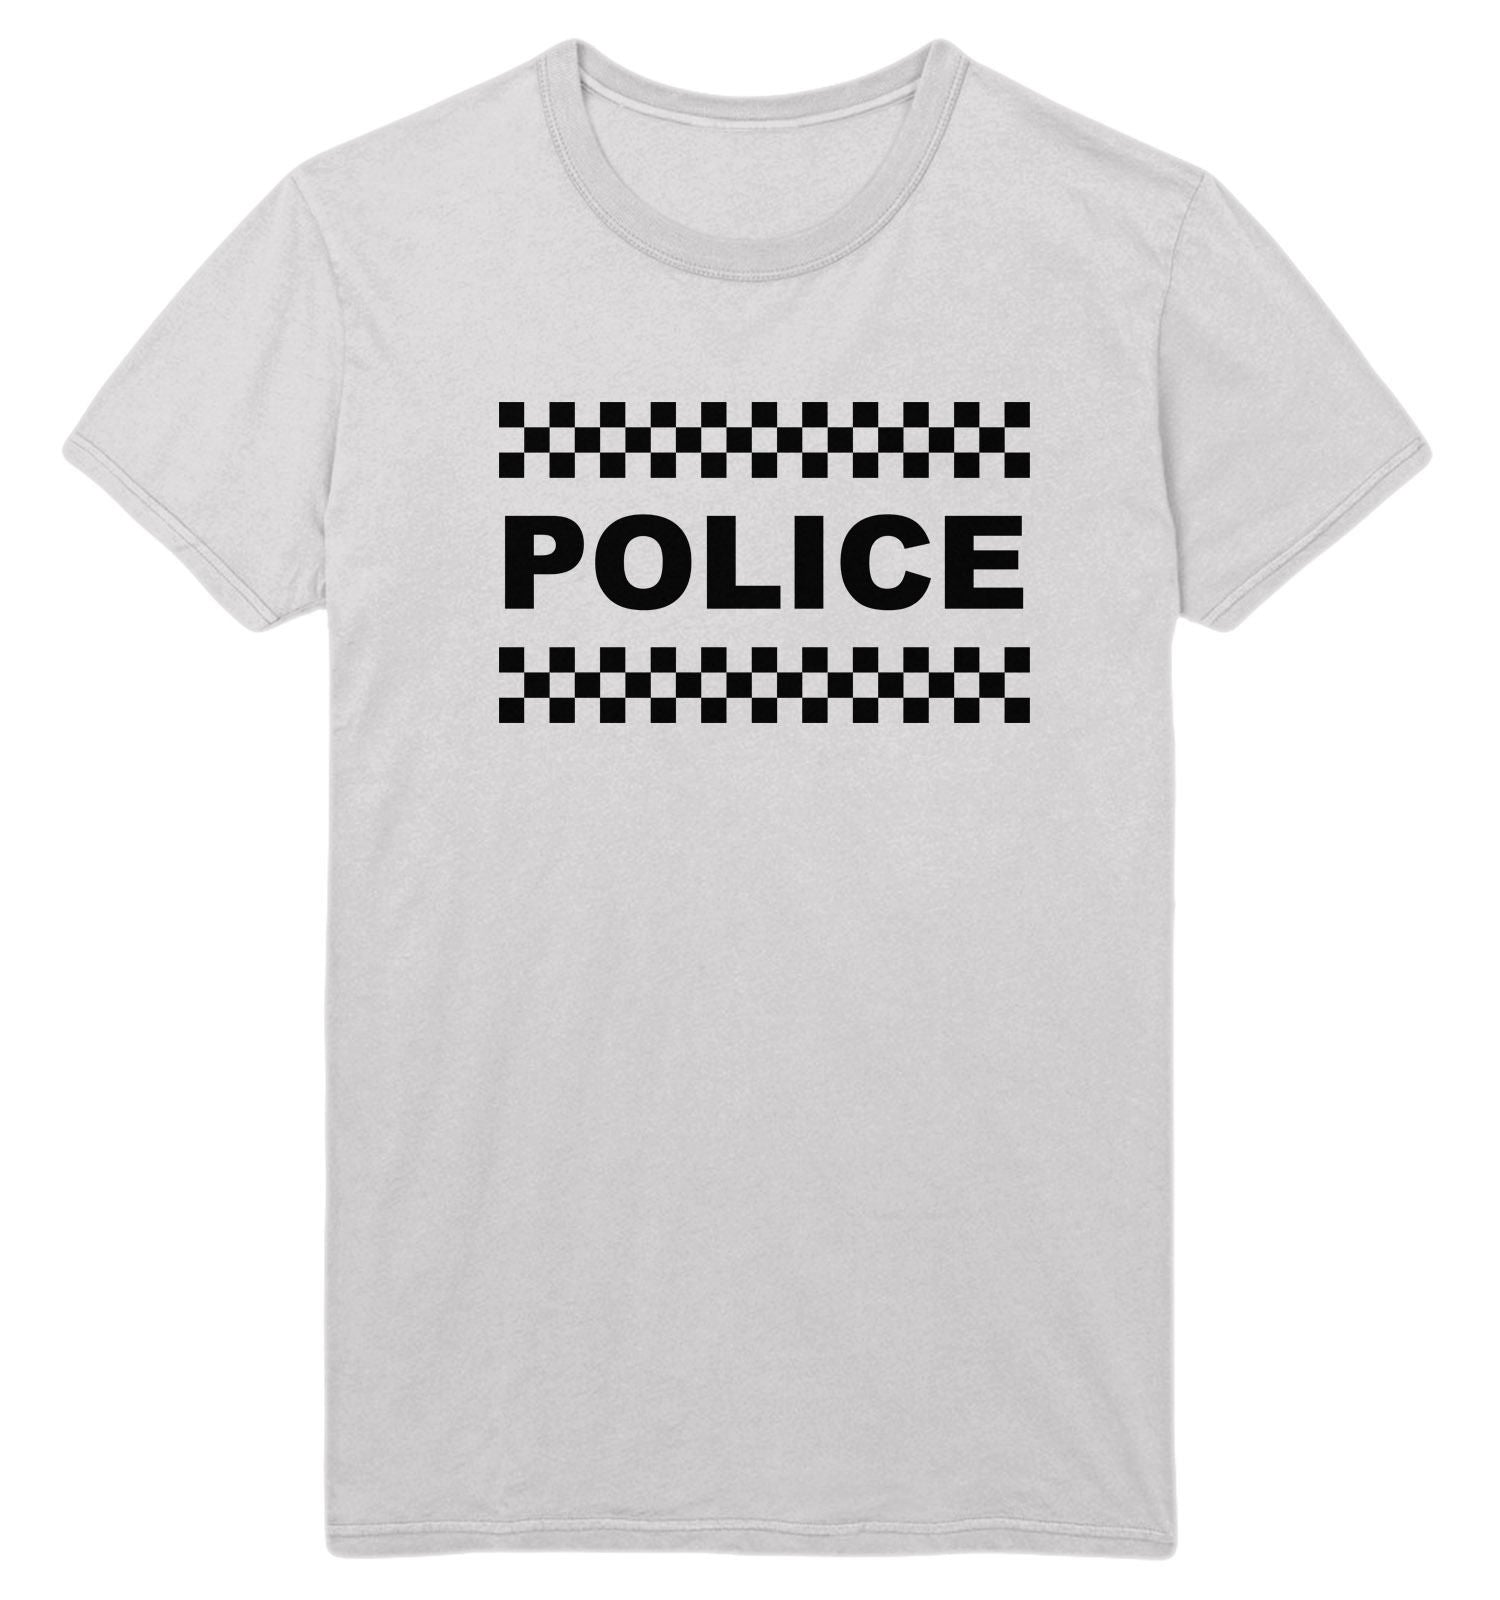 police t shirt fancy dress